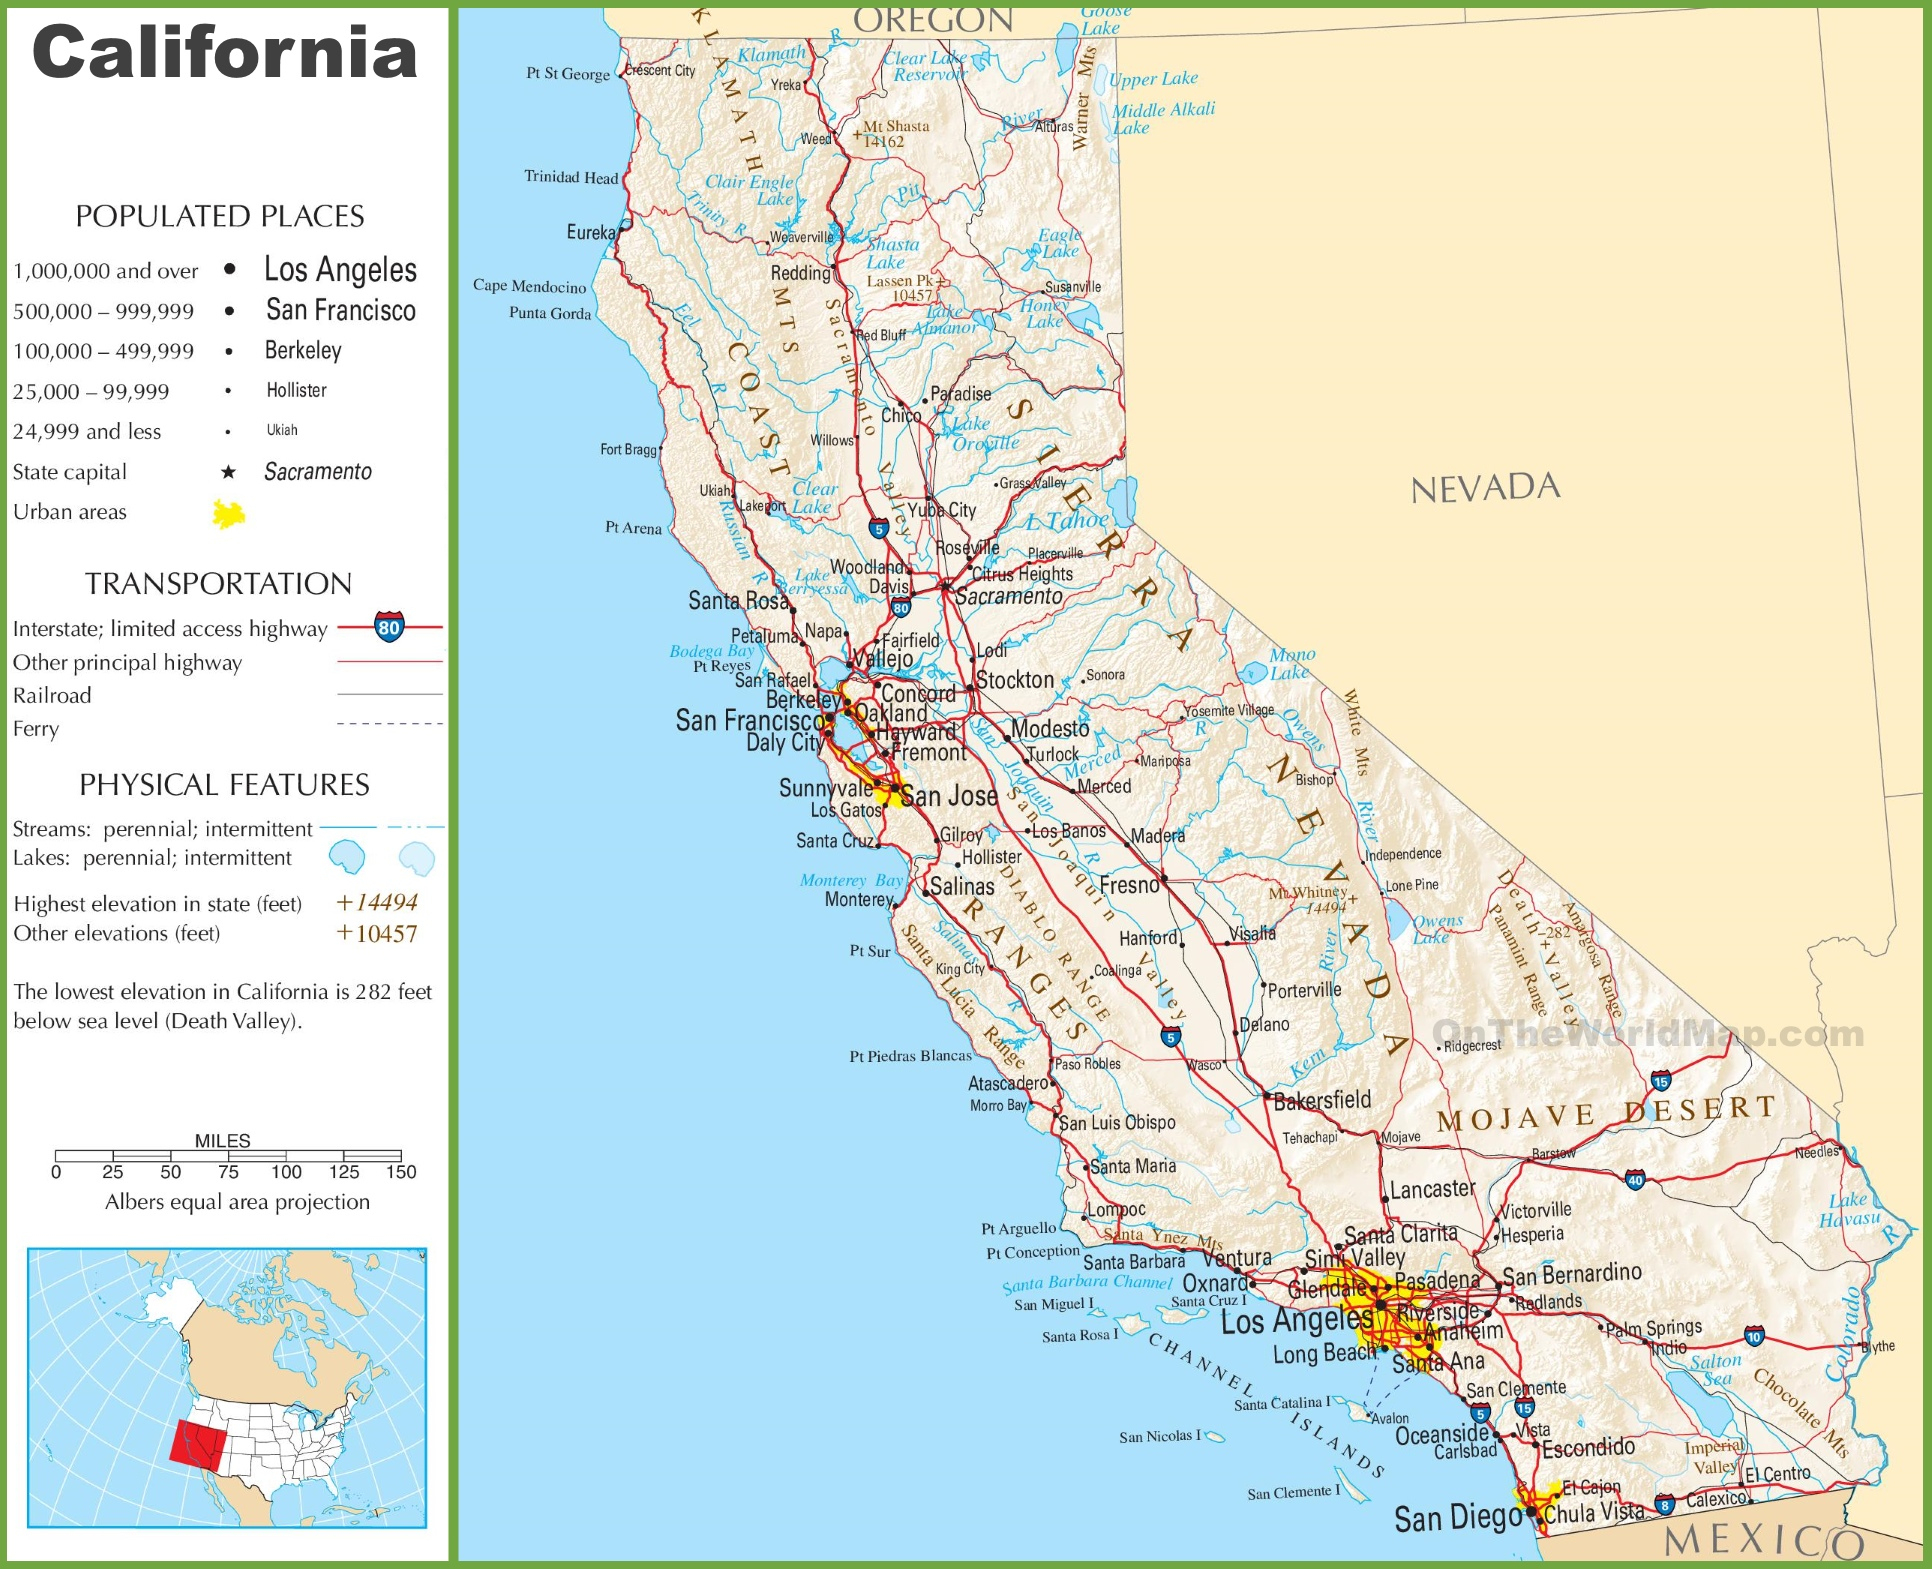 California Highway Map - California Highway Map